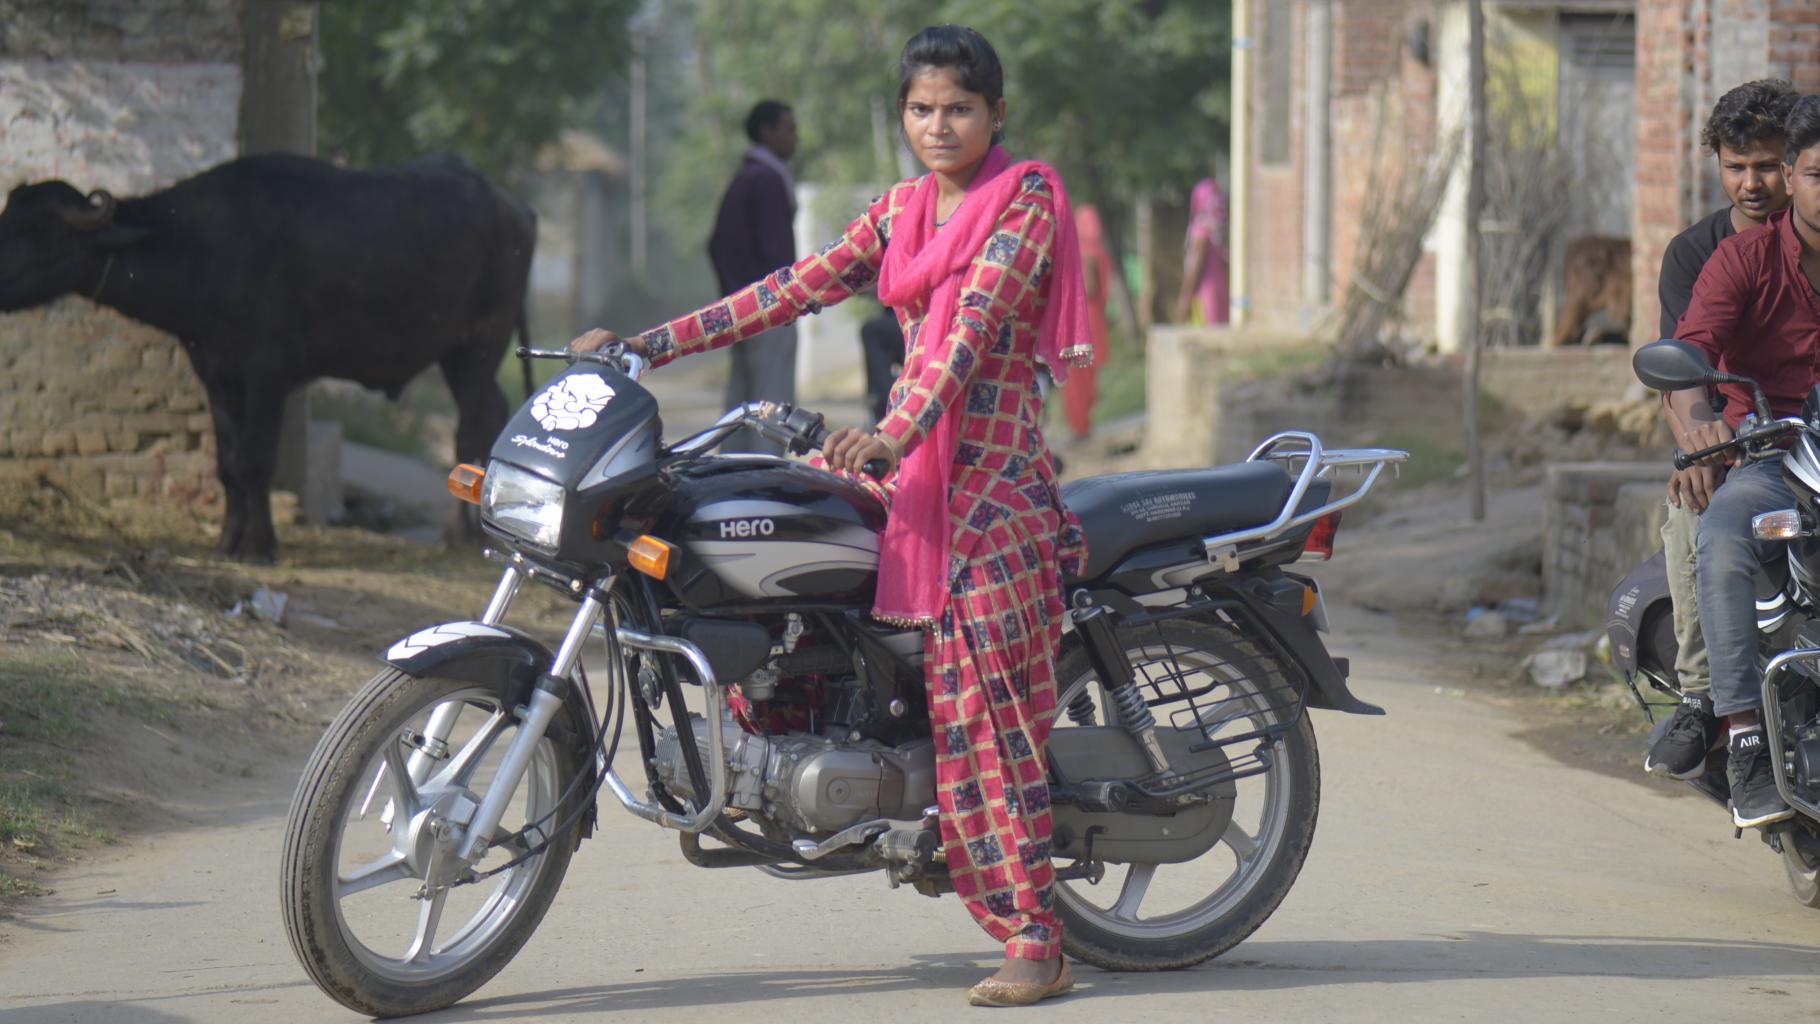 Eine junge indische Frau sitzt auf einem Motorrad; neben ihr zwei Männer auf einem anderen Motorrad